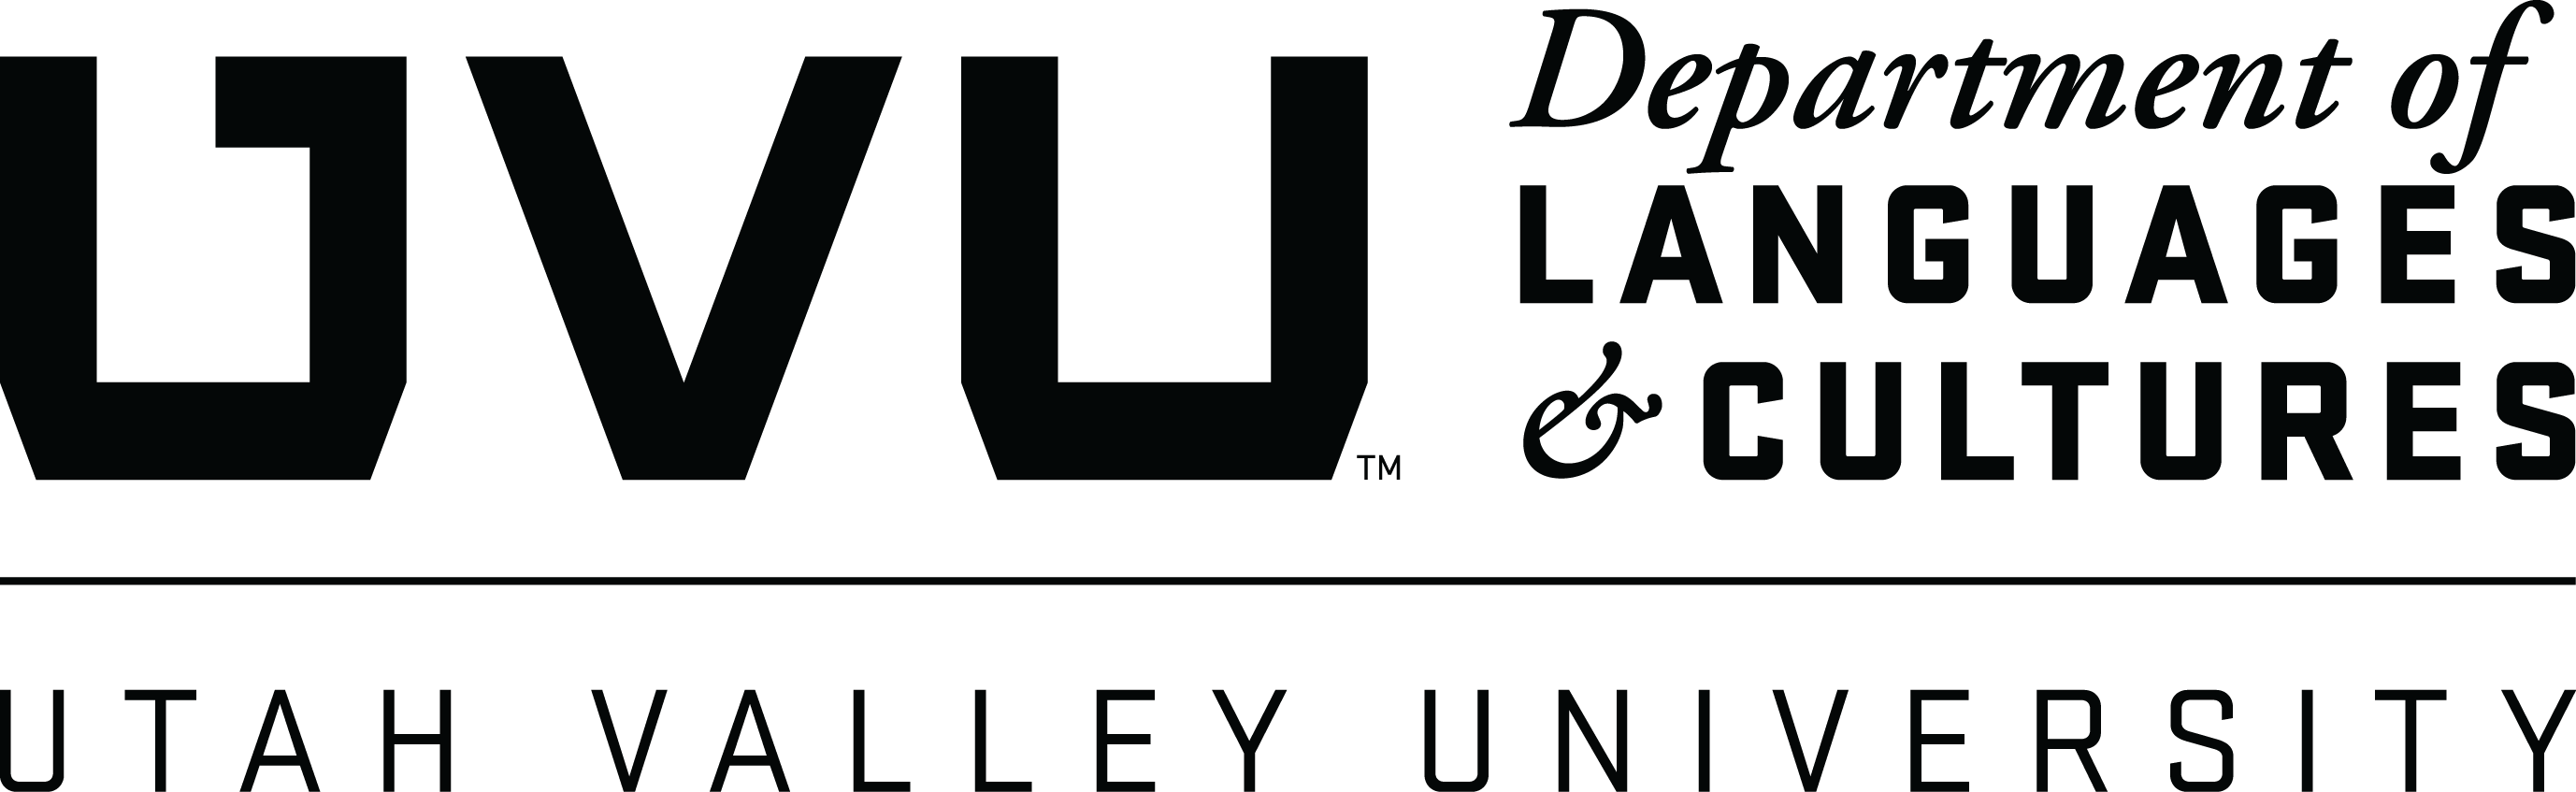  UVU Department of Languages & Cultures logo